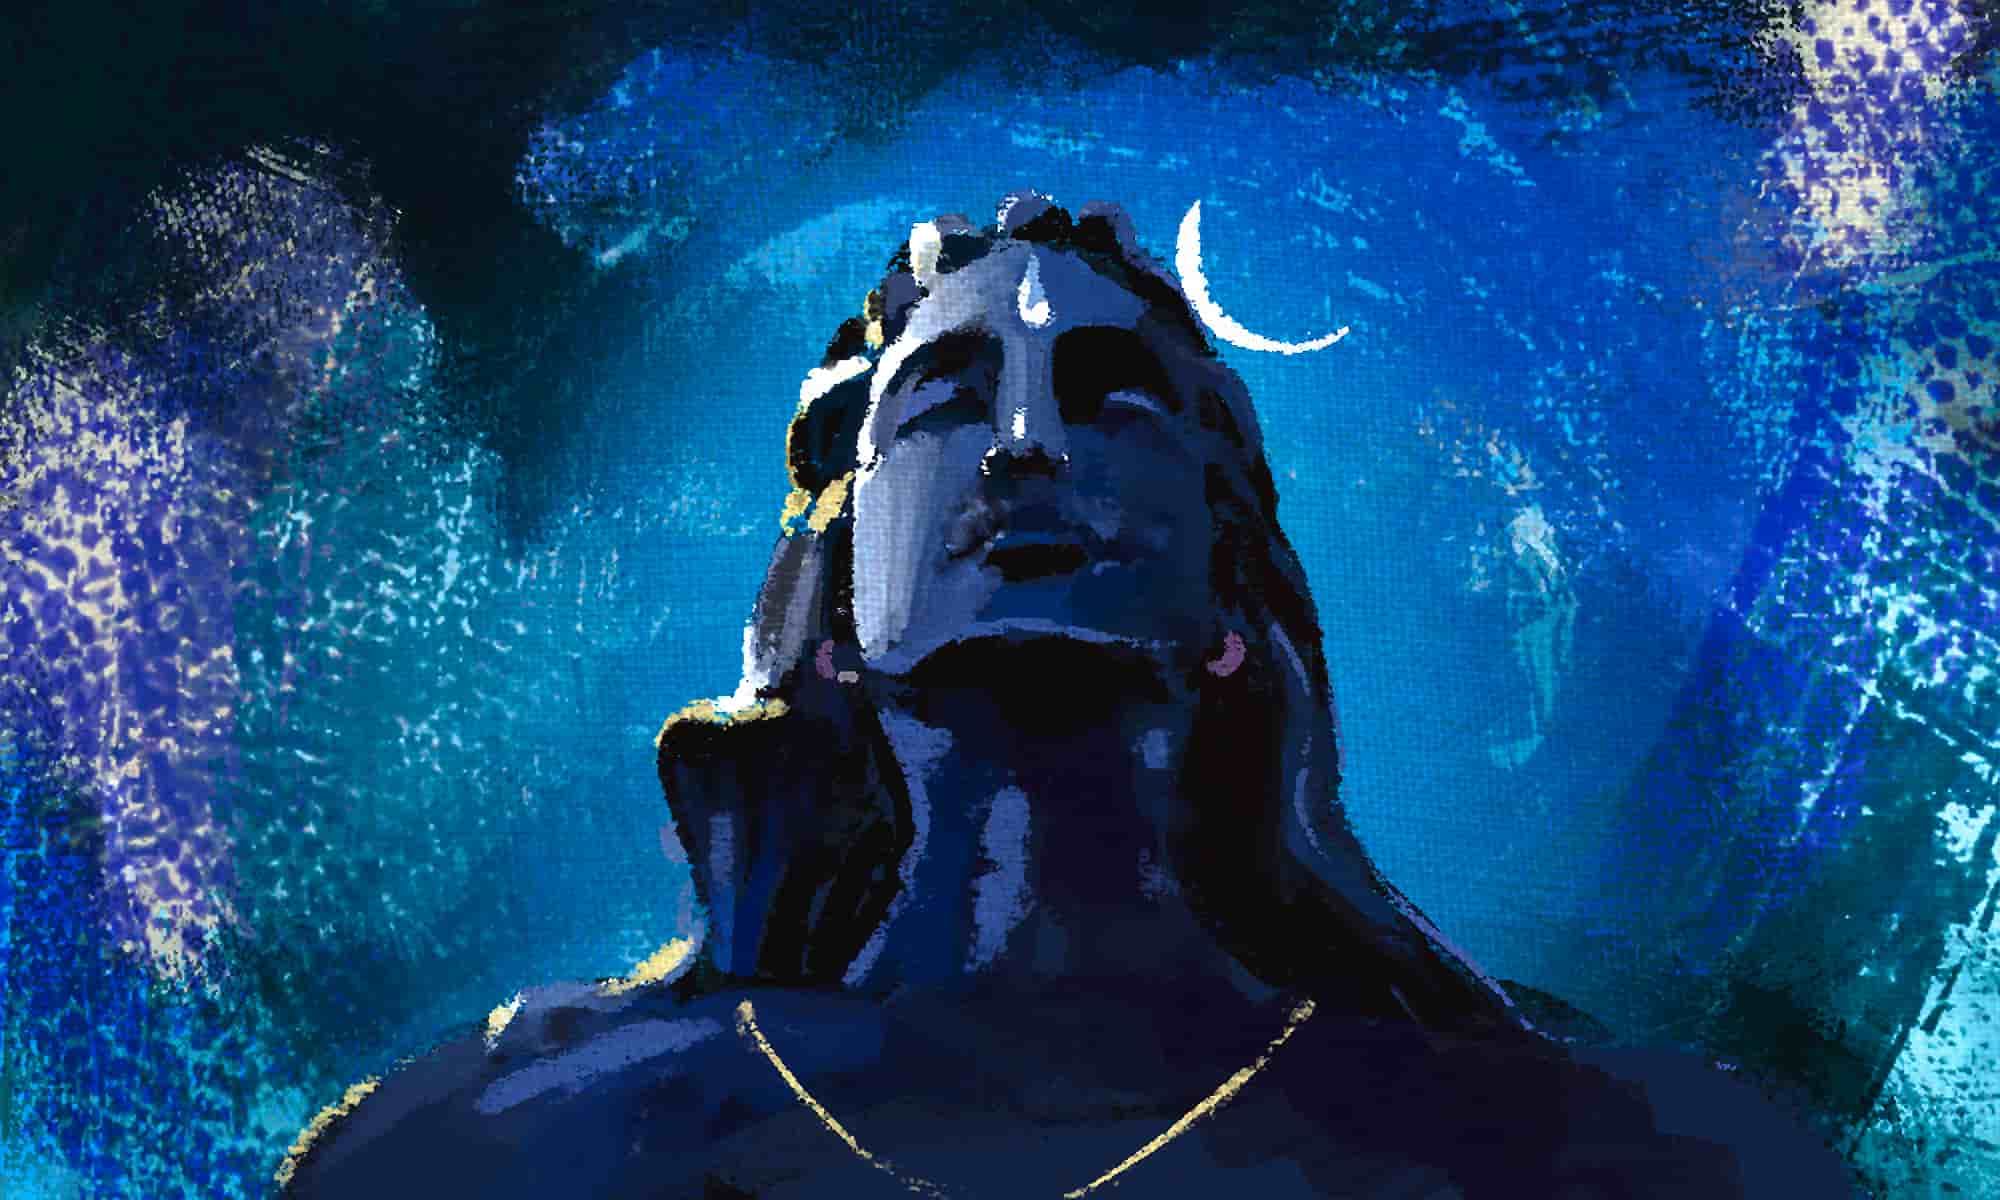 Shiva as Mahadeva